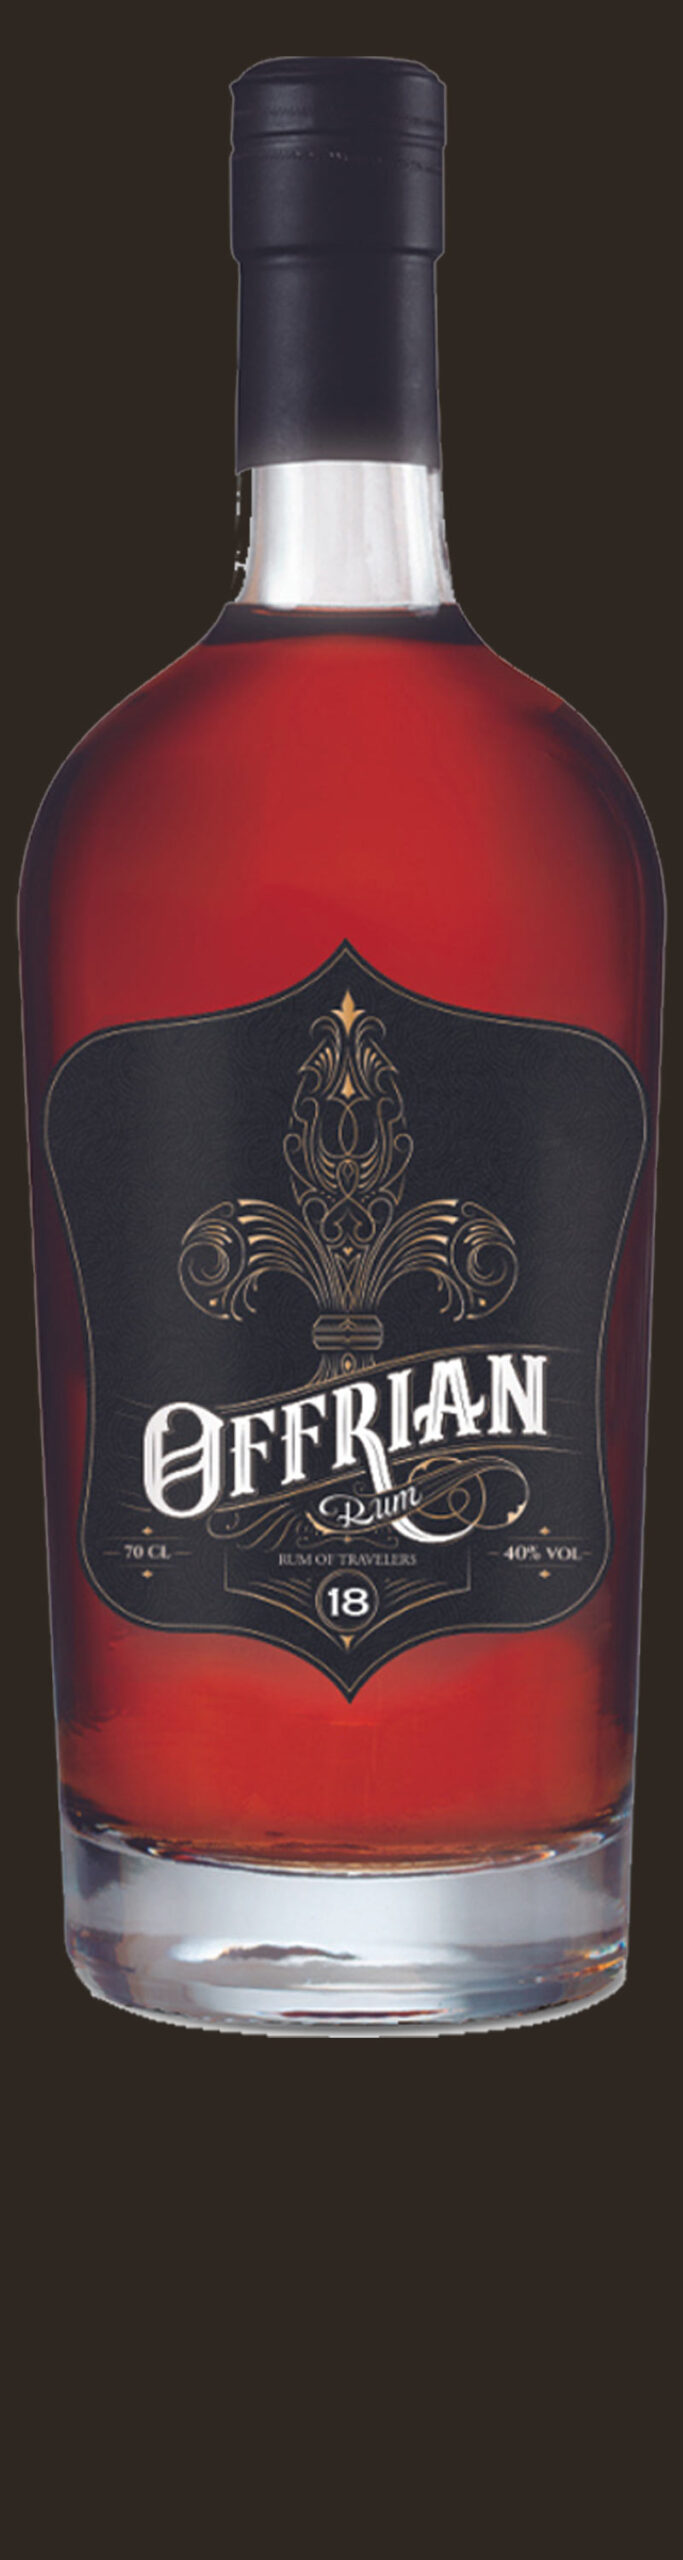 Offrian Rum 18 Años